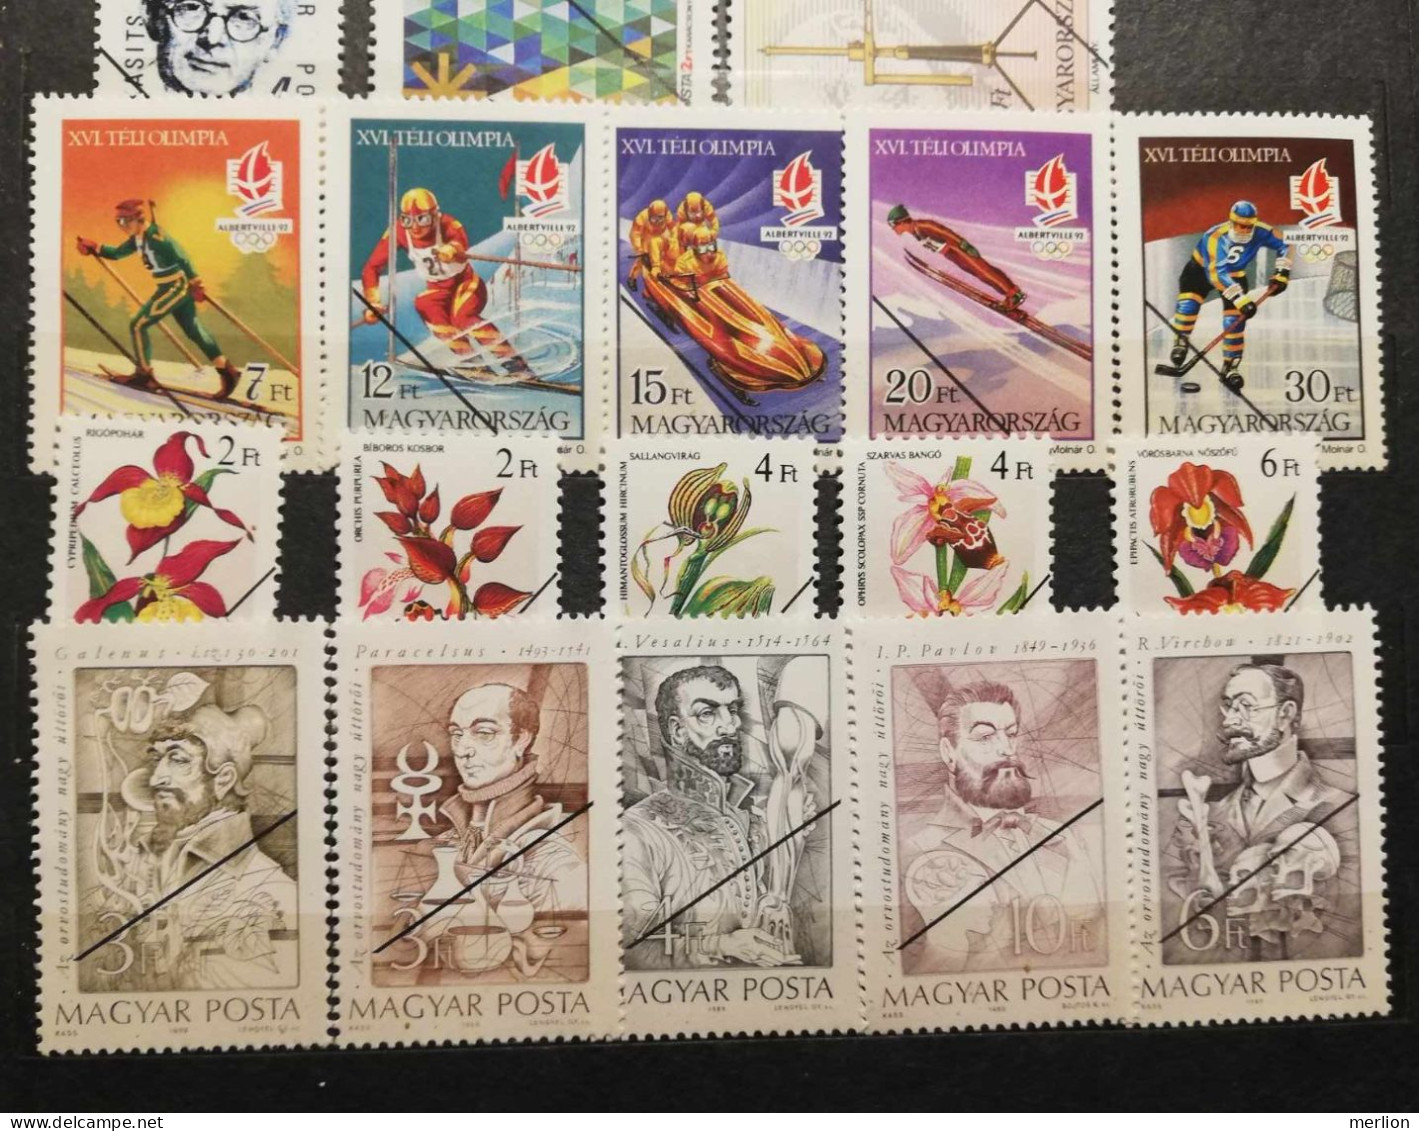 SP001  Hungary  Specimen  Lot Of 29 Stamps  1980-90's - Proeven & Herdrukken